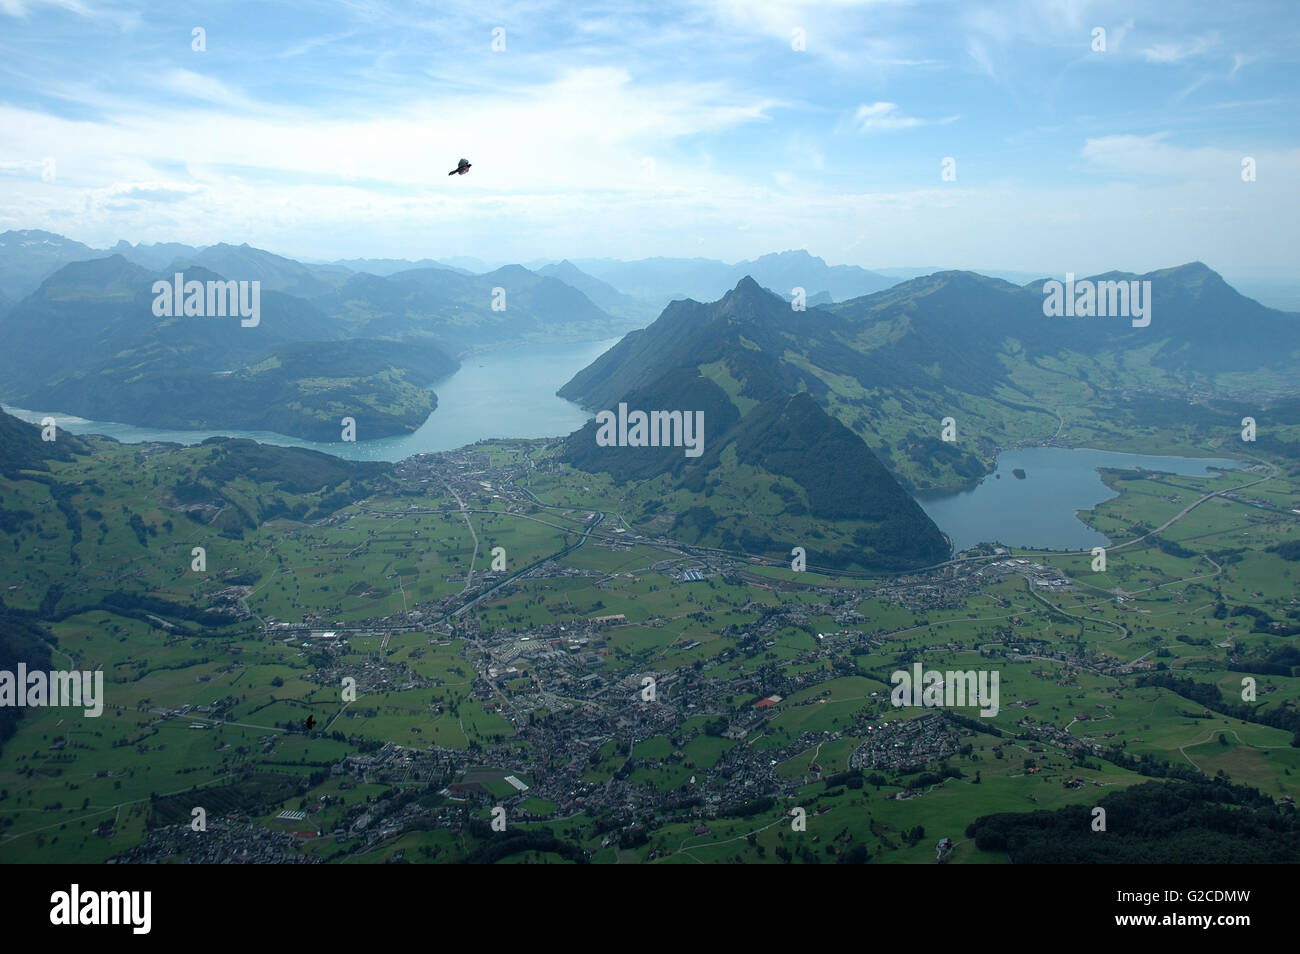 Schwytz ville, 2 lacs, les sommets et la vallée vu de Grosser Mythen peak dans les Alpes en Suisse Banque D'Images